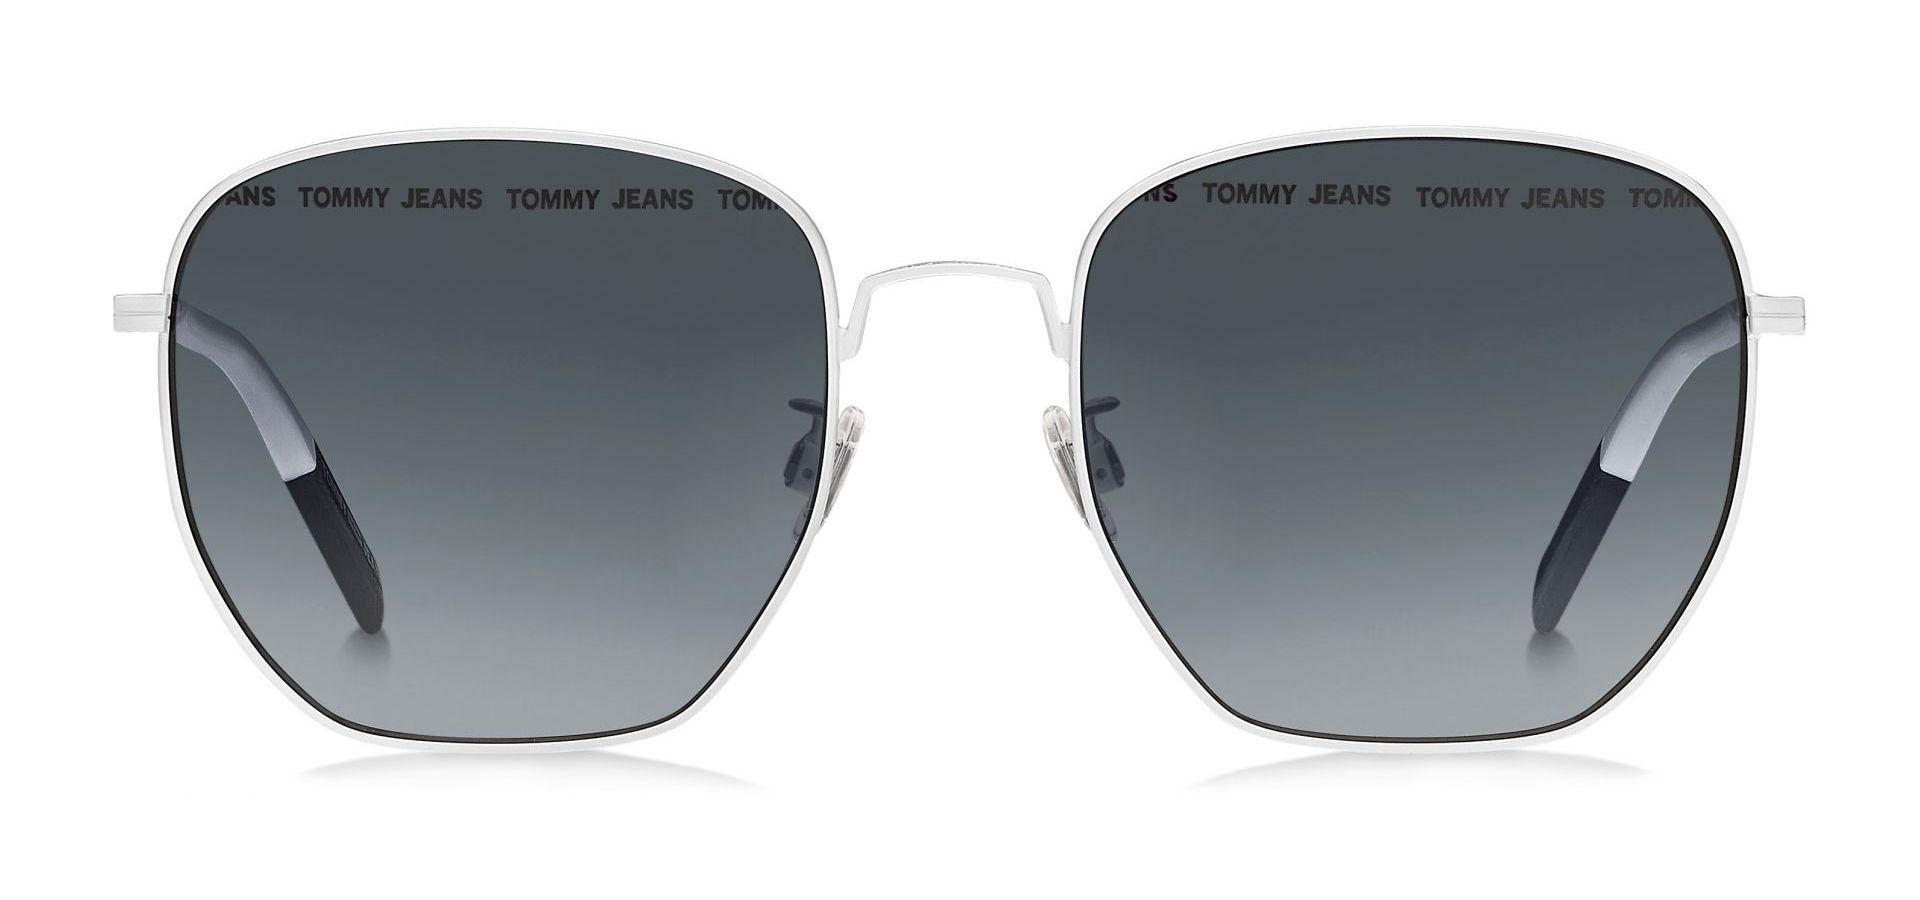 Sunčane naočale Tommy Jeans TOMMY HILFIGER 0034: Boja: White, Veličina: 54-14-145, Spol: unisex, Materijal: metal